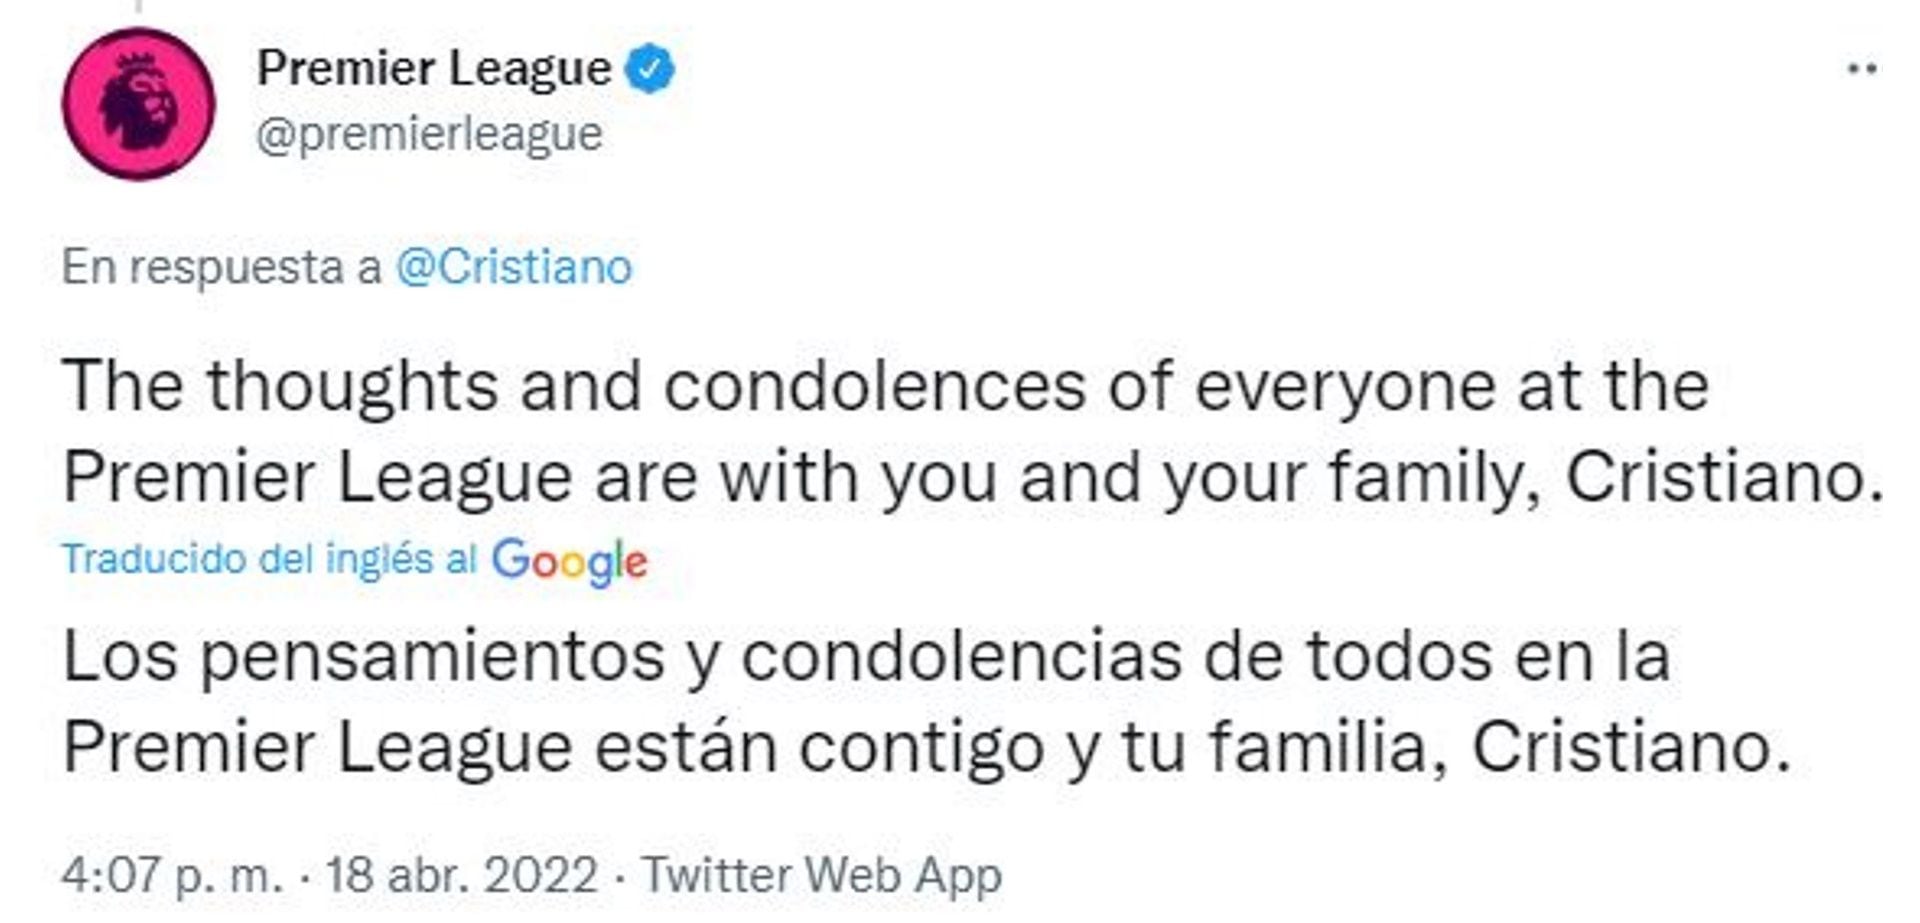 La Premier League, donde Cristiano Ronaldo brilla, le envió un sentido mensaje a Cristiano y su familia